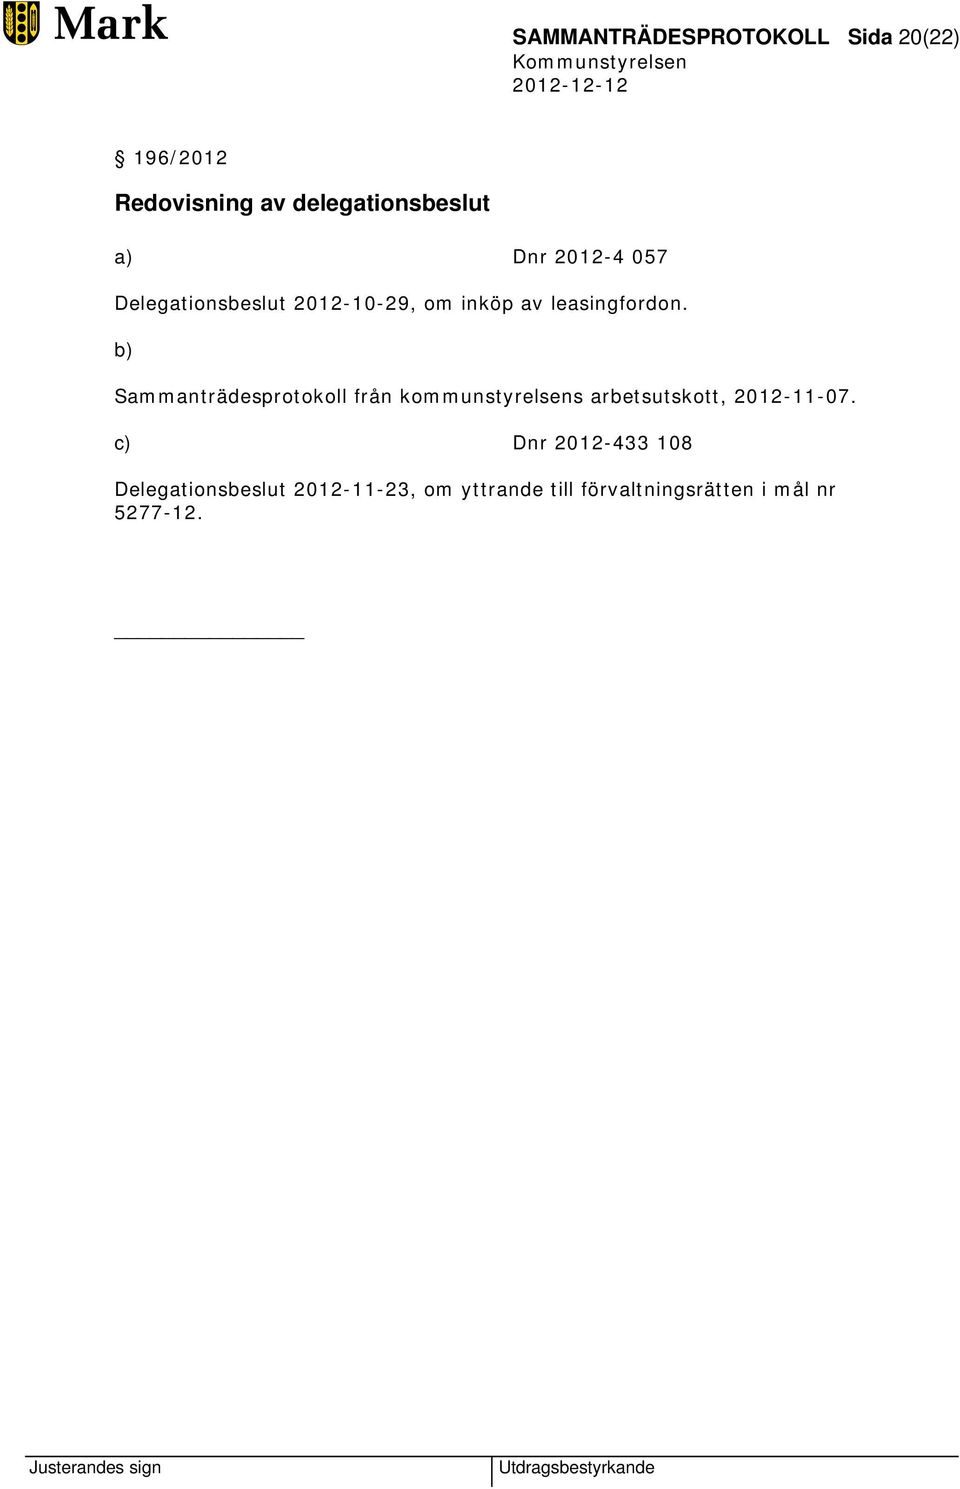 b) Sammanträdesprotokoll från kommunstyrelsens arbetsutskott, 2012-11-07.